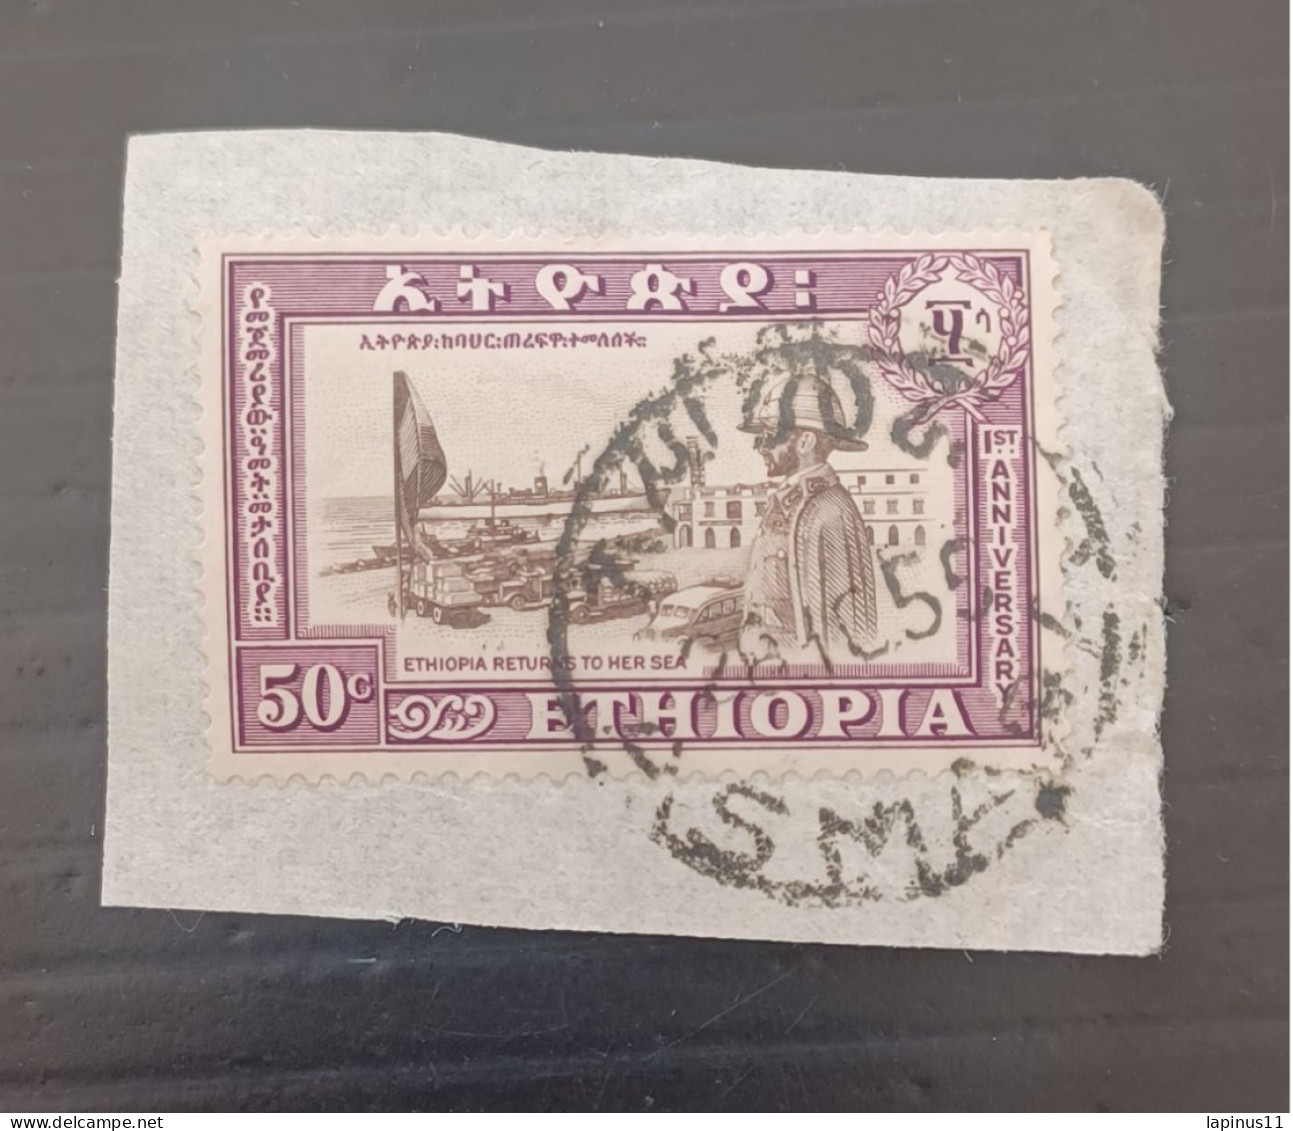 ETIOPIA 1953 ANNIVERSAIRE DU RETOUR DE L ERITREA -PORT DE L ERITREAET LE NEGUS YVERT N 325 - Ethiopie